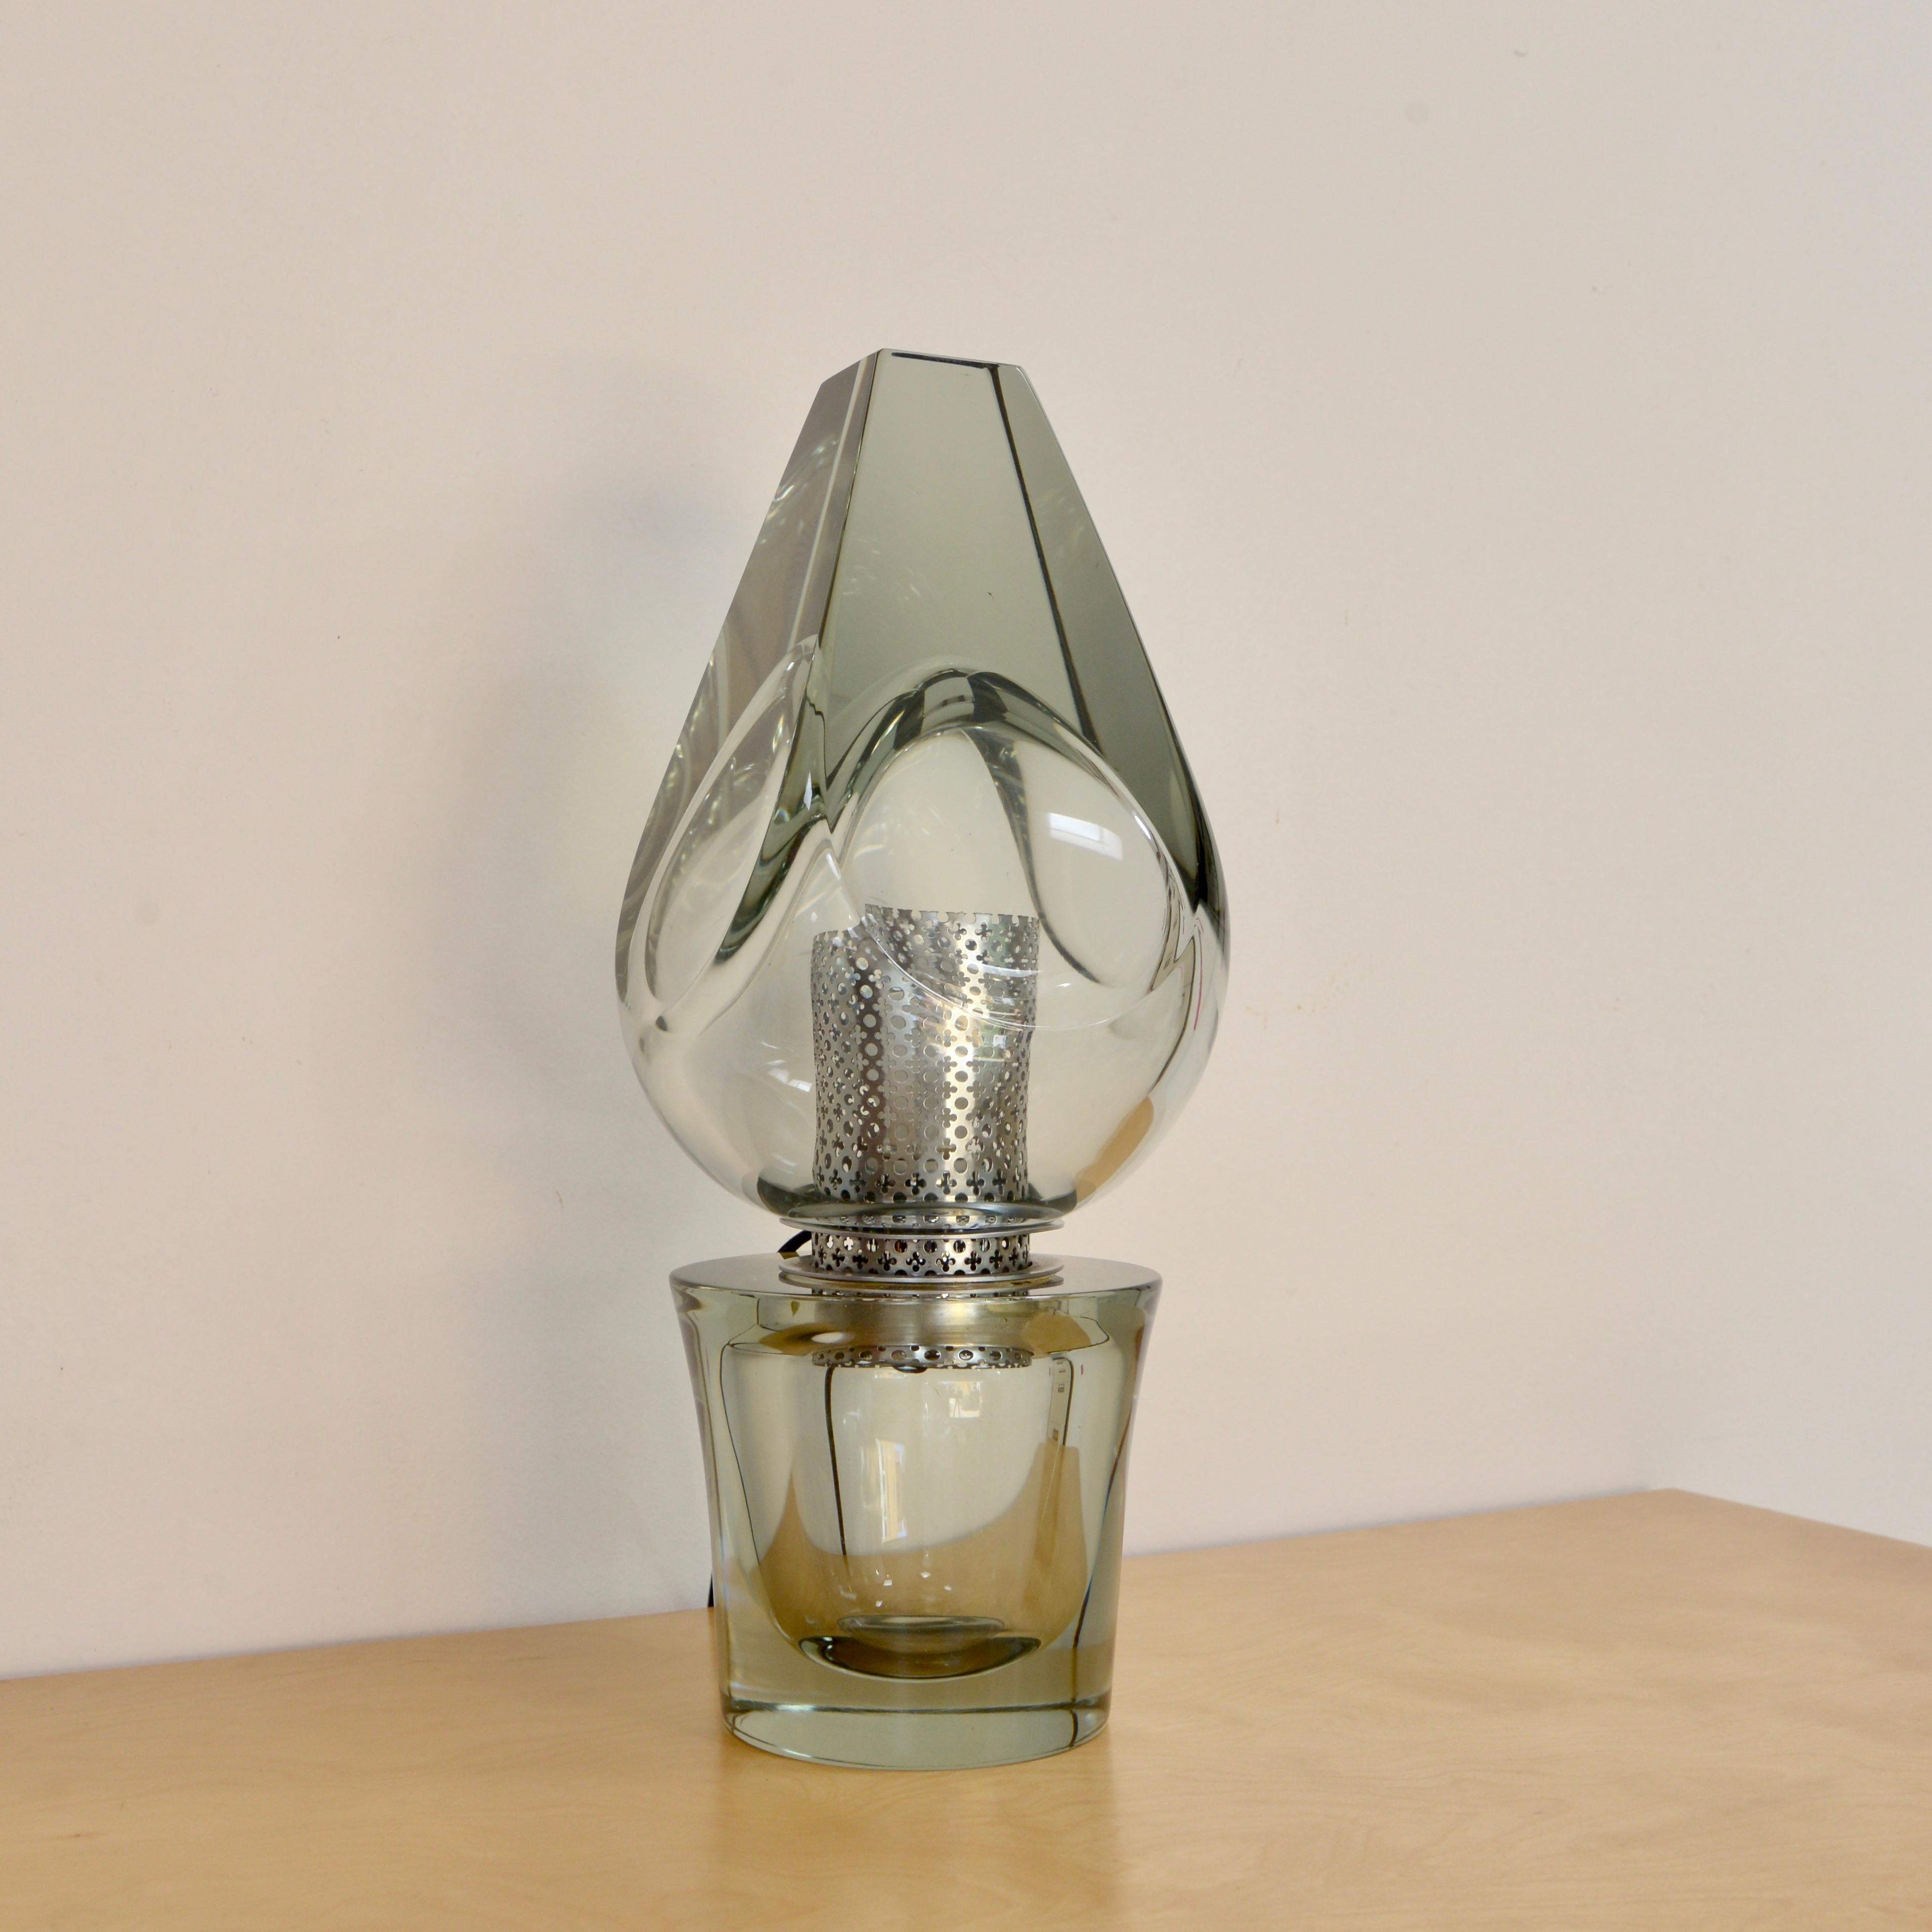 Elegante Tischlampe aus italienischem Murano-Kristallglas mit der Signatur Seguso aus den 1970er Jahren. Perforierte Beschläge aus vernickeltem Messing. Vollständig neu verdrahtet mit einer einzigen E26-Fassung auf mittlerer Basis. Bereit für den